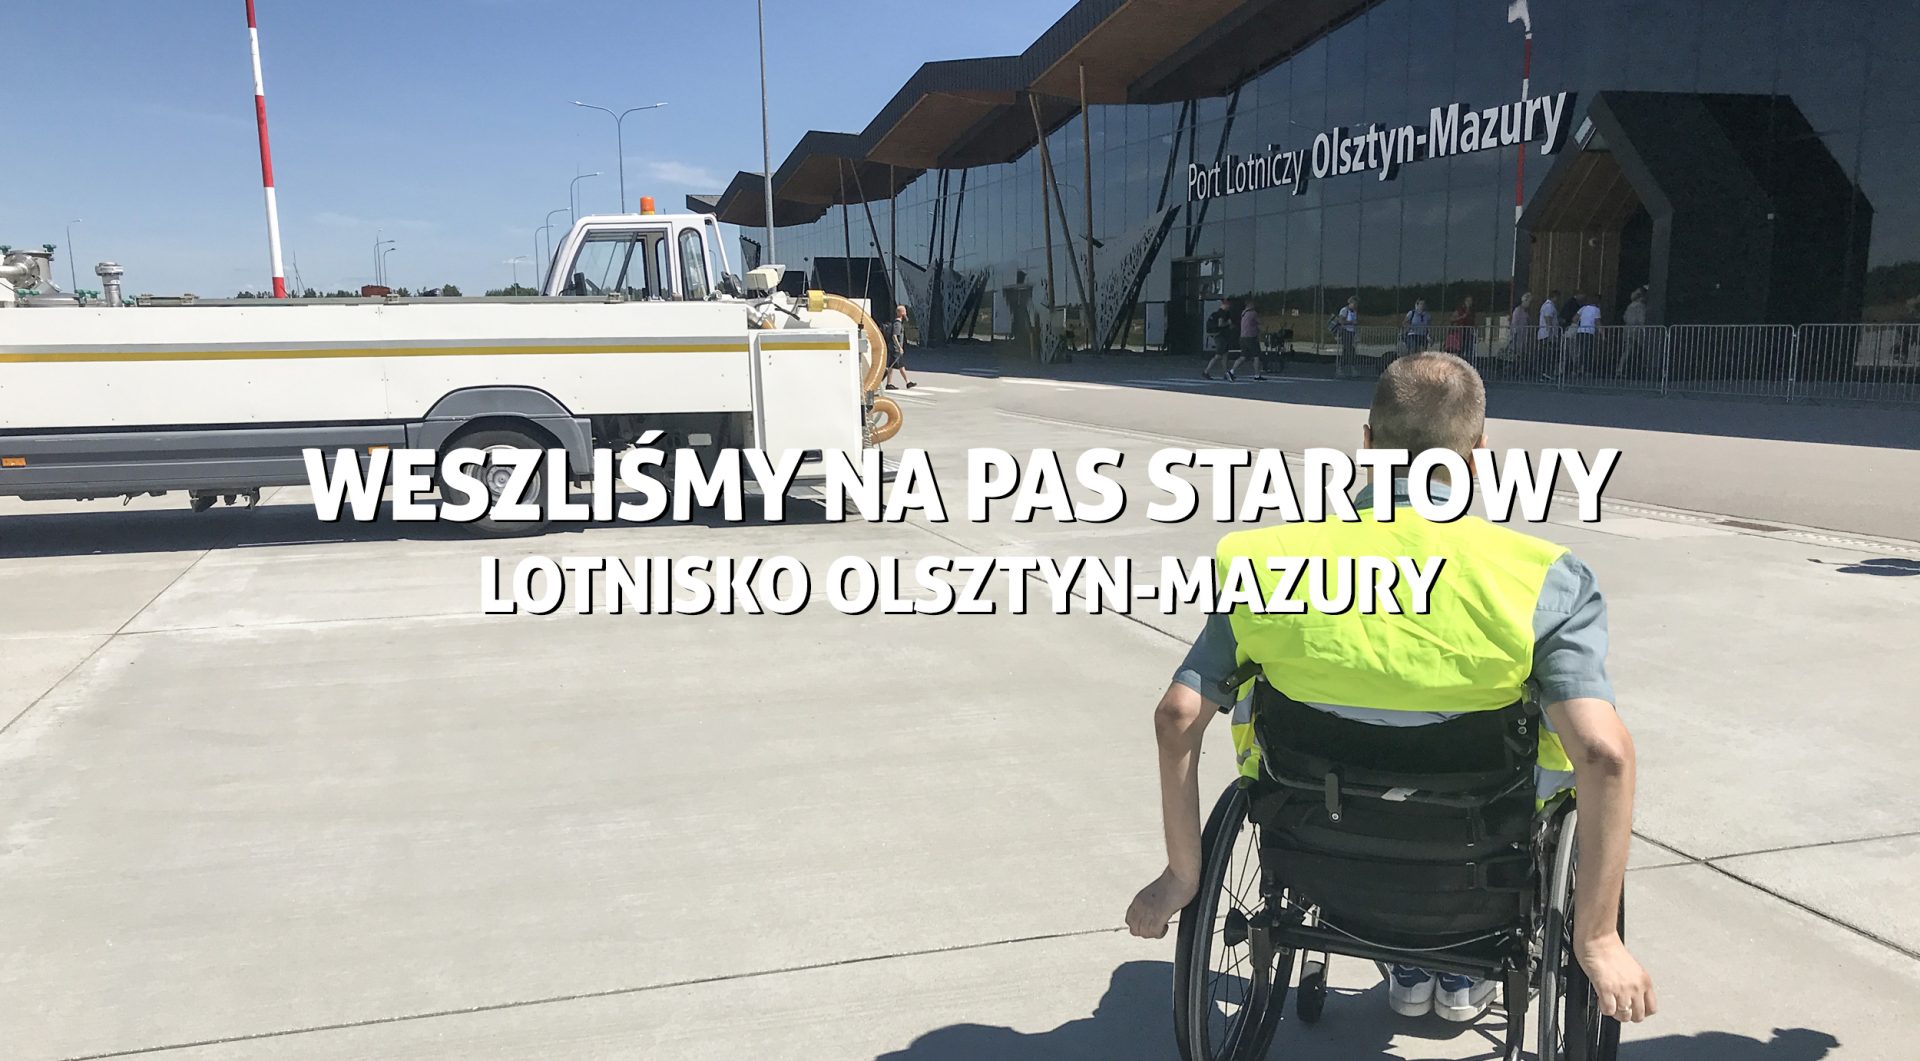 Lotnisko Olsztyn - Mazury. Weszliśmy na pas startowy